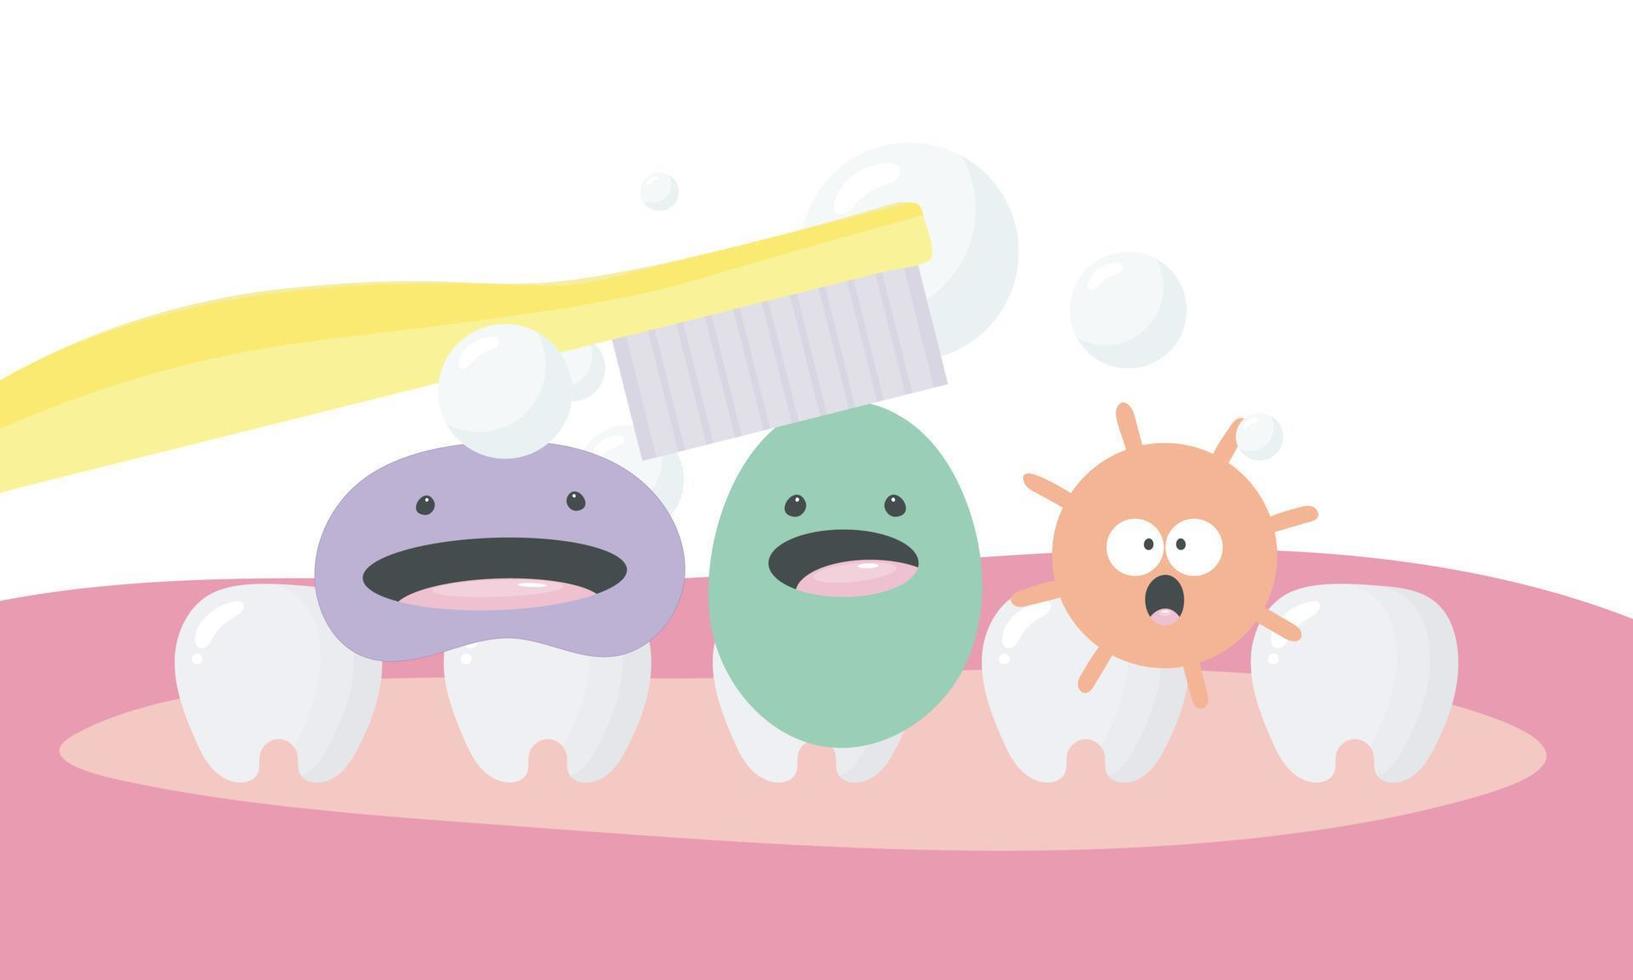 affisch om tandhygien i tecknad stil. illustrationen visar roliga tänder, mikrober, tandborste. dental koncept för barn tandvård och ortodonti. vektor illustration.